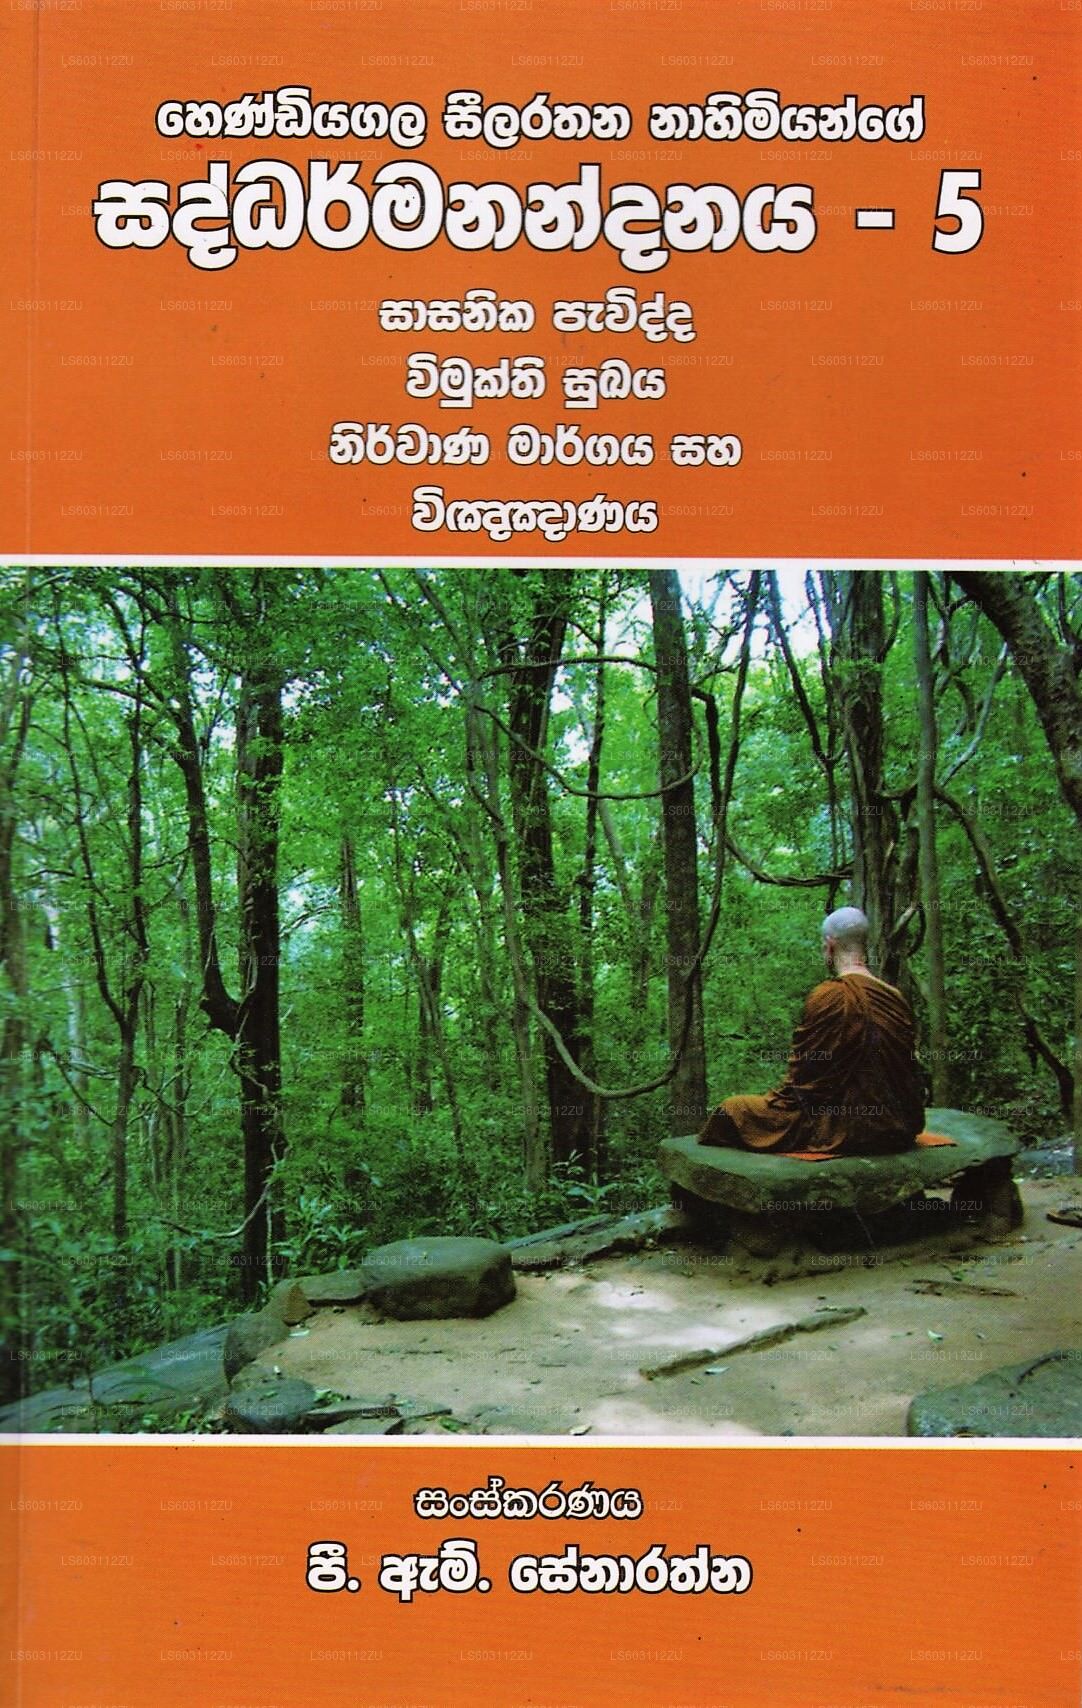 Hendiyagala Seelarathana Nahimiyange Saddharmanandanaya-5 (Sasanika Pavidda, Vimukthi Sukaya, Nirvana 